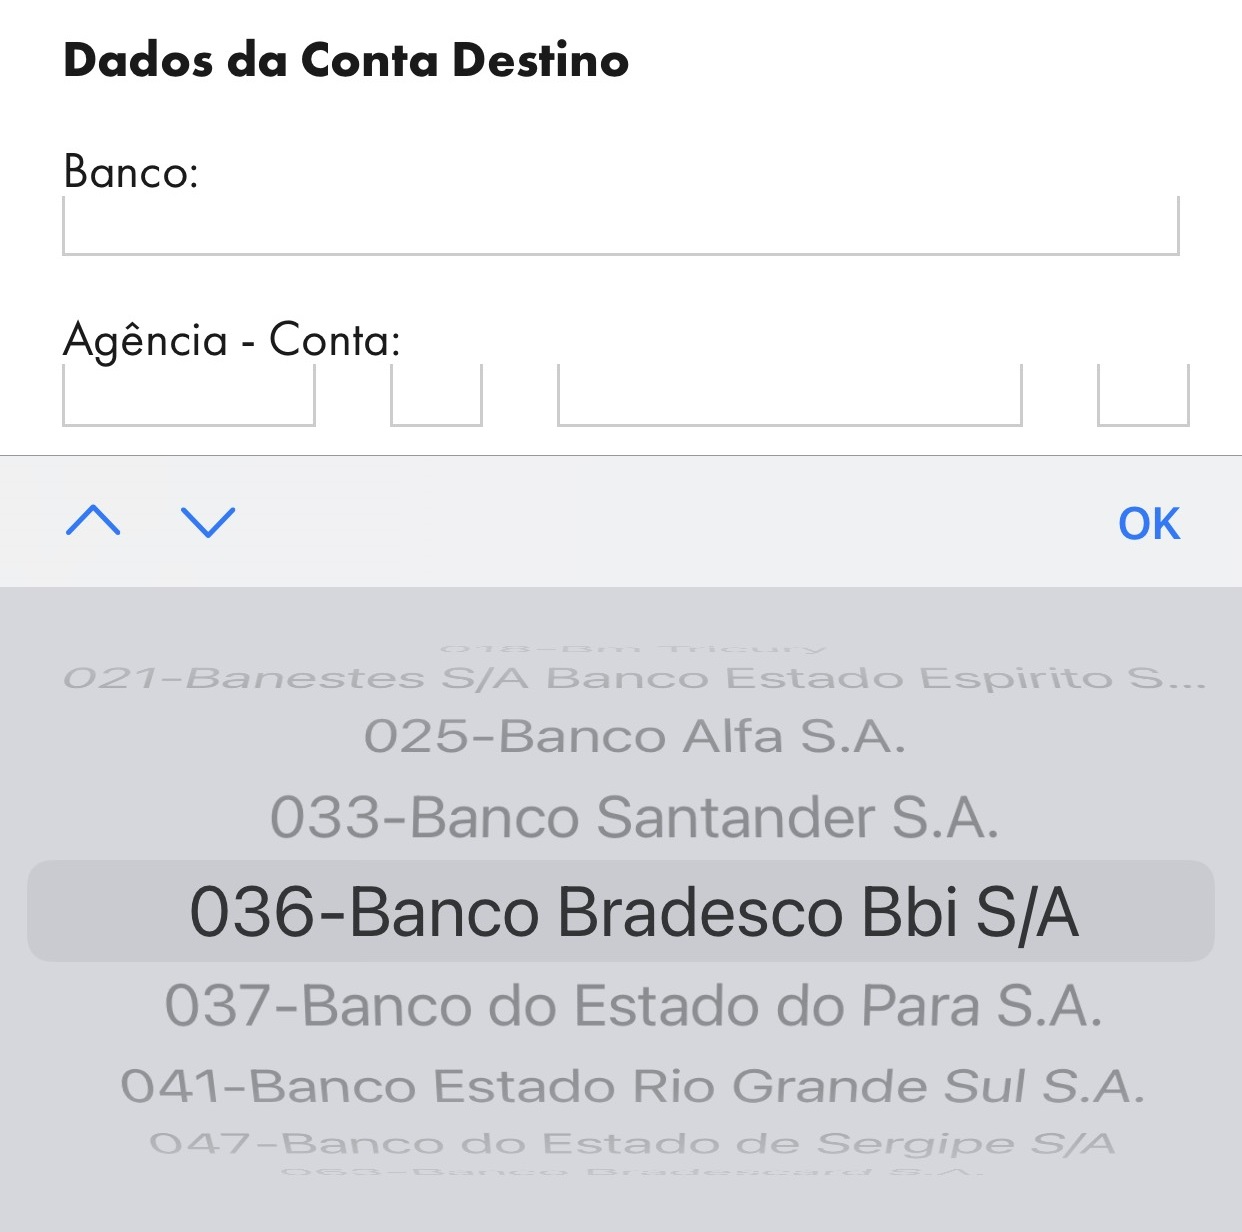 Lista traz os códigos de todos os bancos presentes no Brasil